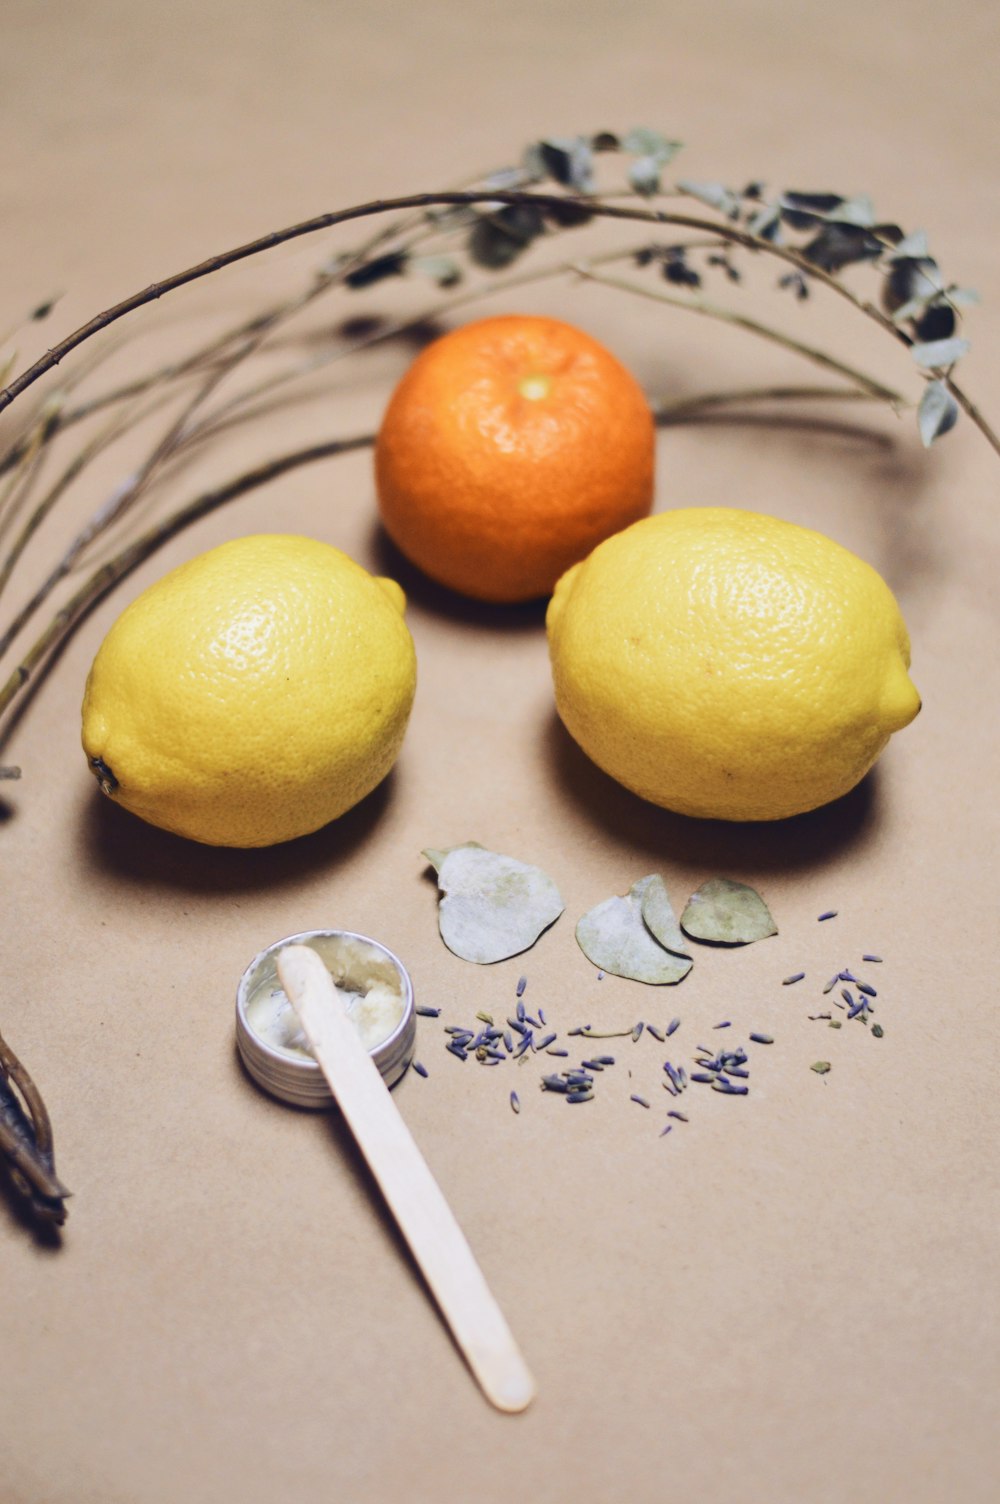 Frutta gialla del limone accanto alla forchetta d'argento su tessuto floreale bianco e blu